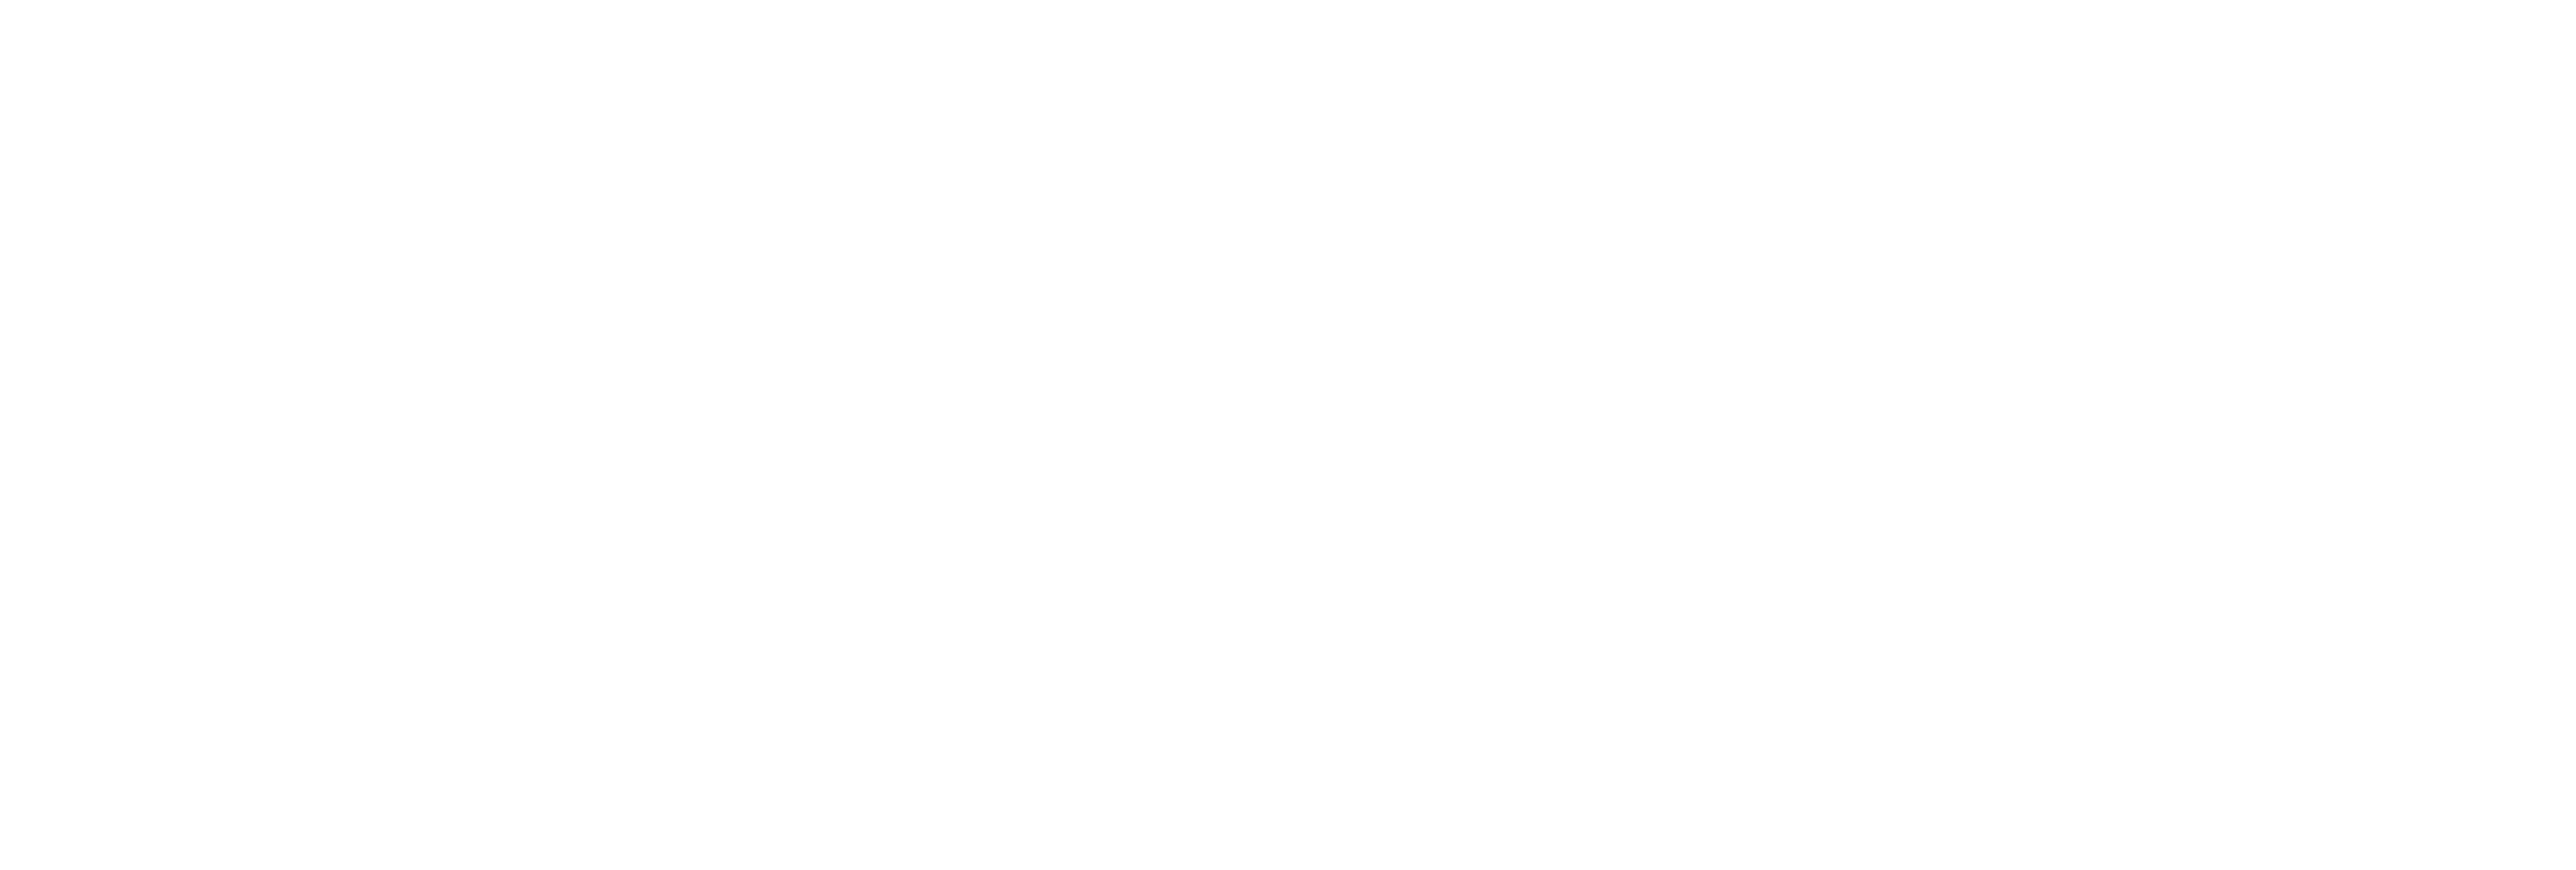 AniCura Vetimacs Medische Beeldvorming te Brussel logo